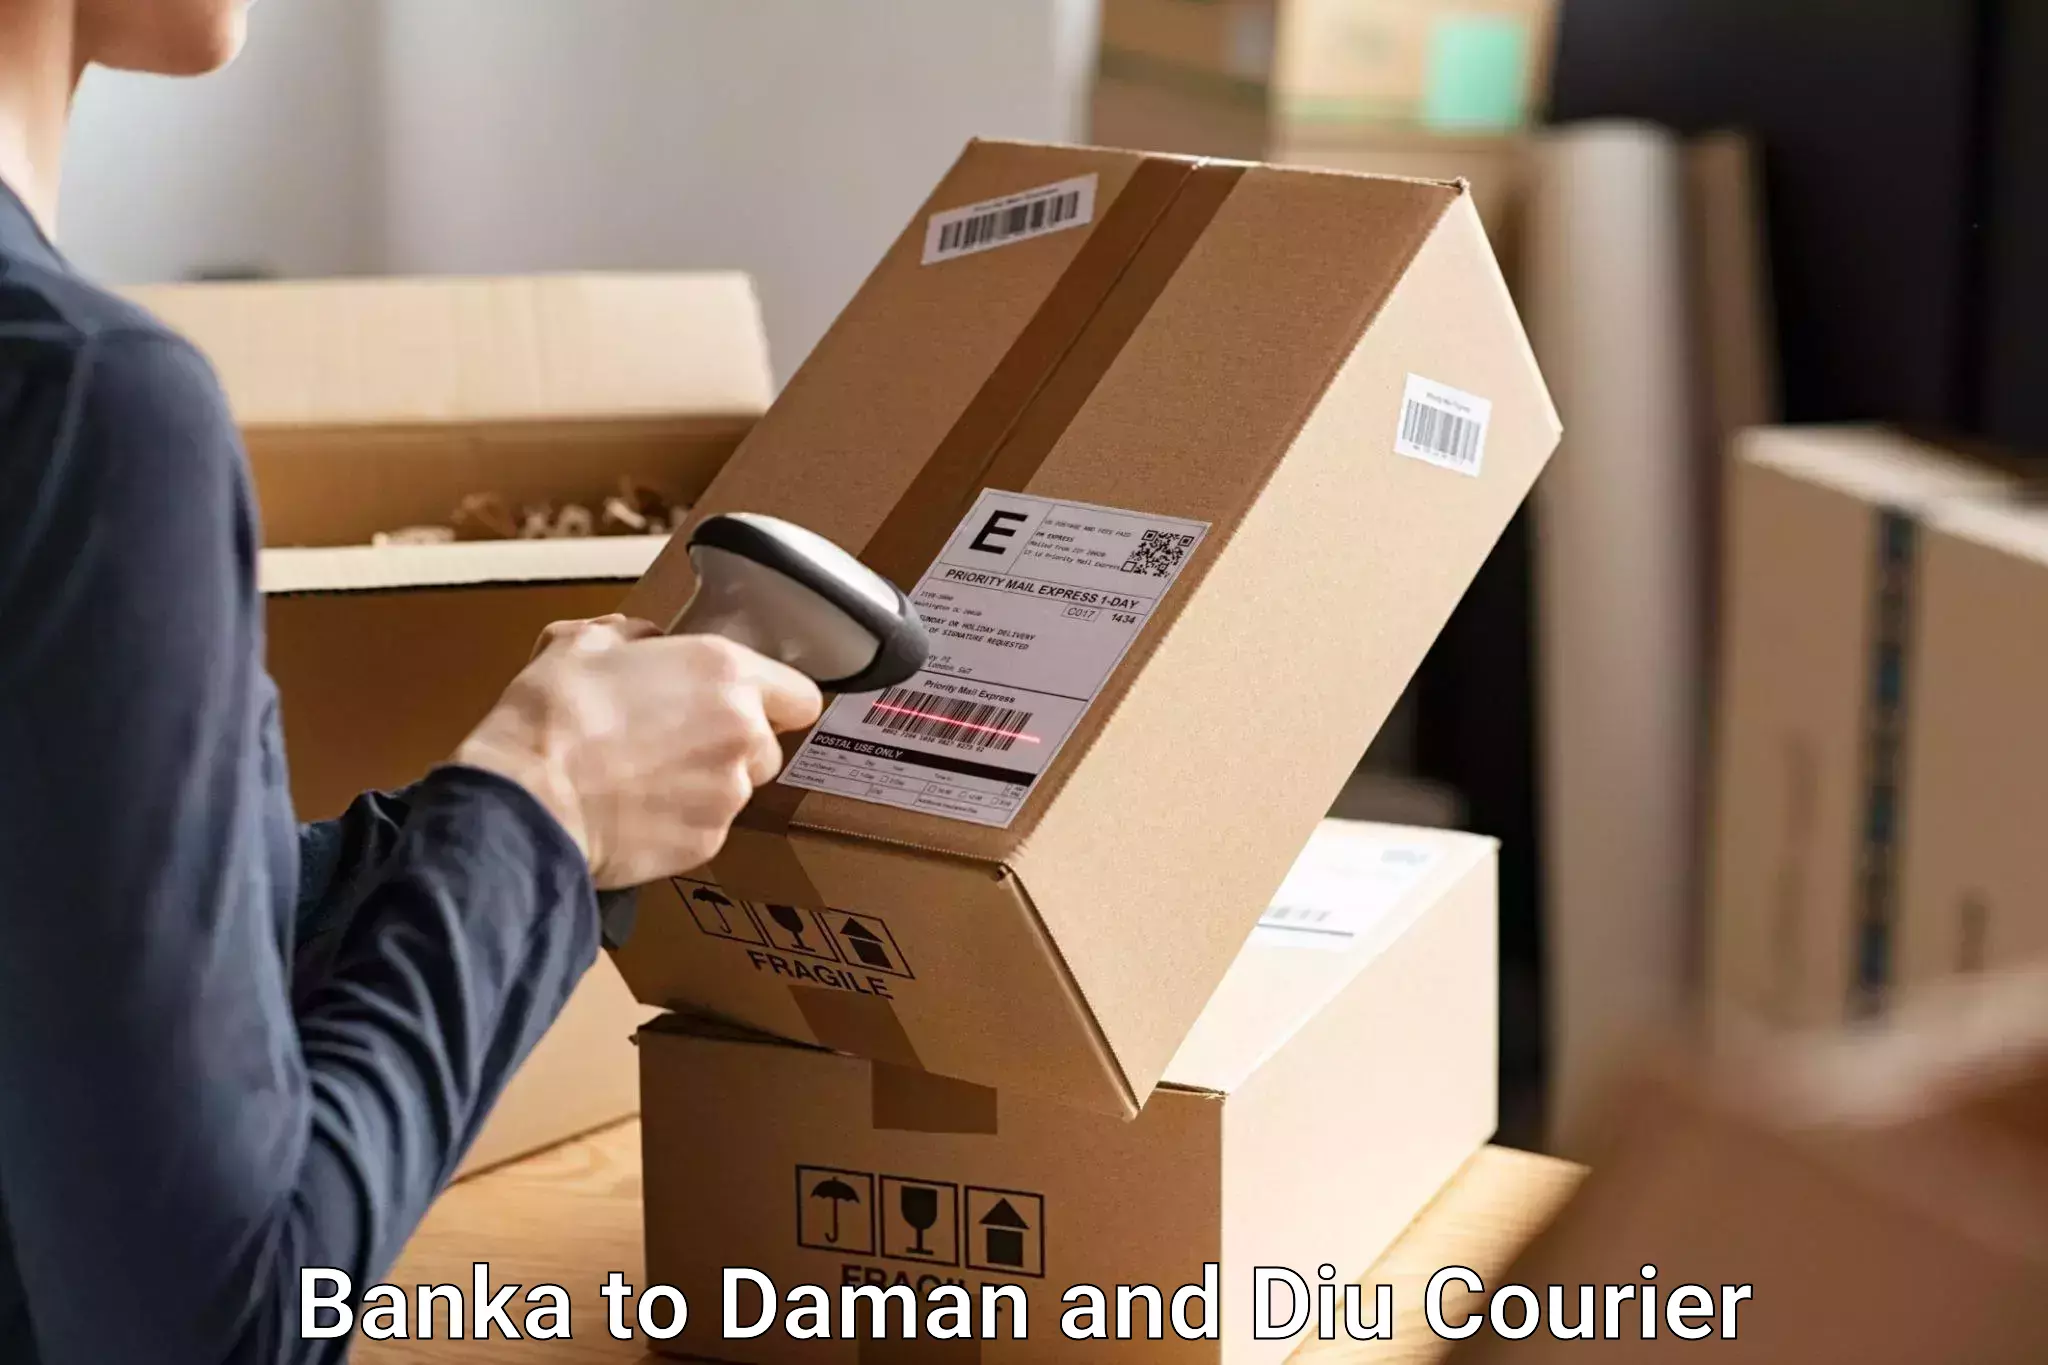 Hassle-free luggage shipping in Banka to Diu